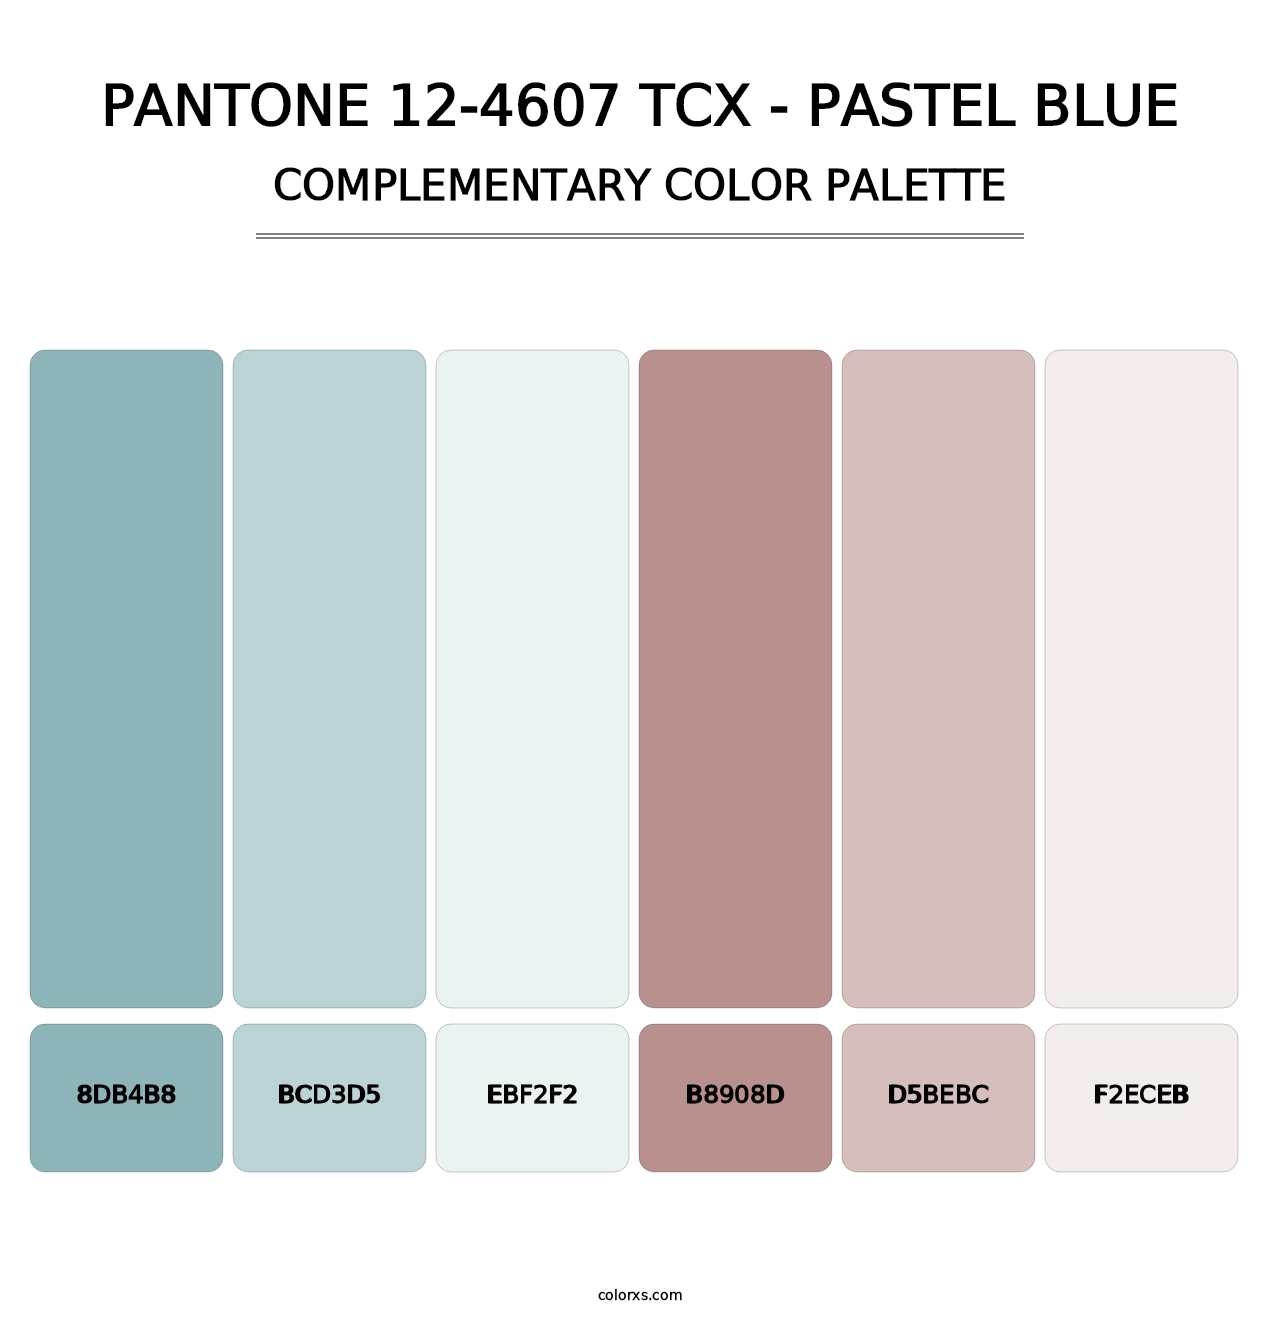 PANTONE 12-4607 TCX - Pastel Blue - Complementary Color Palette